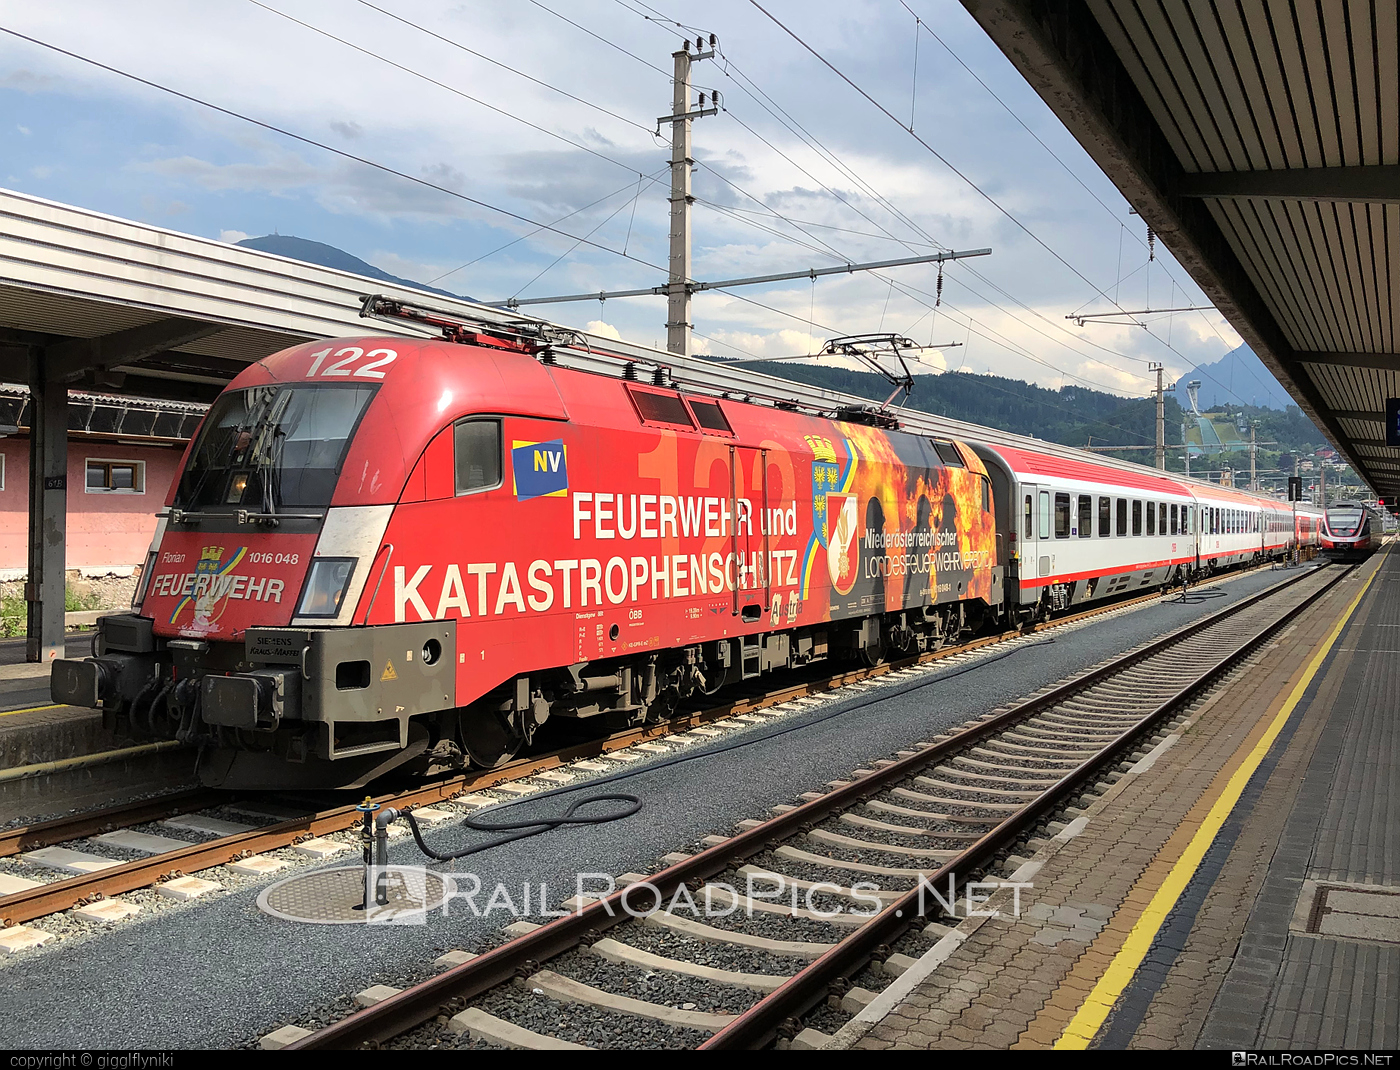 Siemens ES 64 U2 - 1016 048 operated by Österreichische Bundesbahnen #es64 #es64u2 #eurosprinter #obb #osterreichischebundesbahnen #siemens #siemensEs64 #siemensEs64u2 #siemenstaurus #taurus #tauruslocomotive